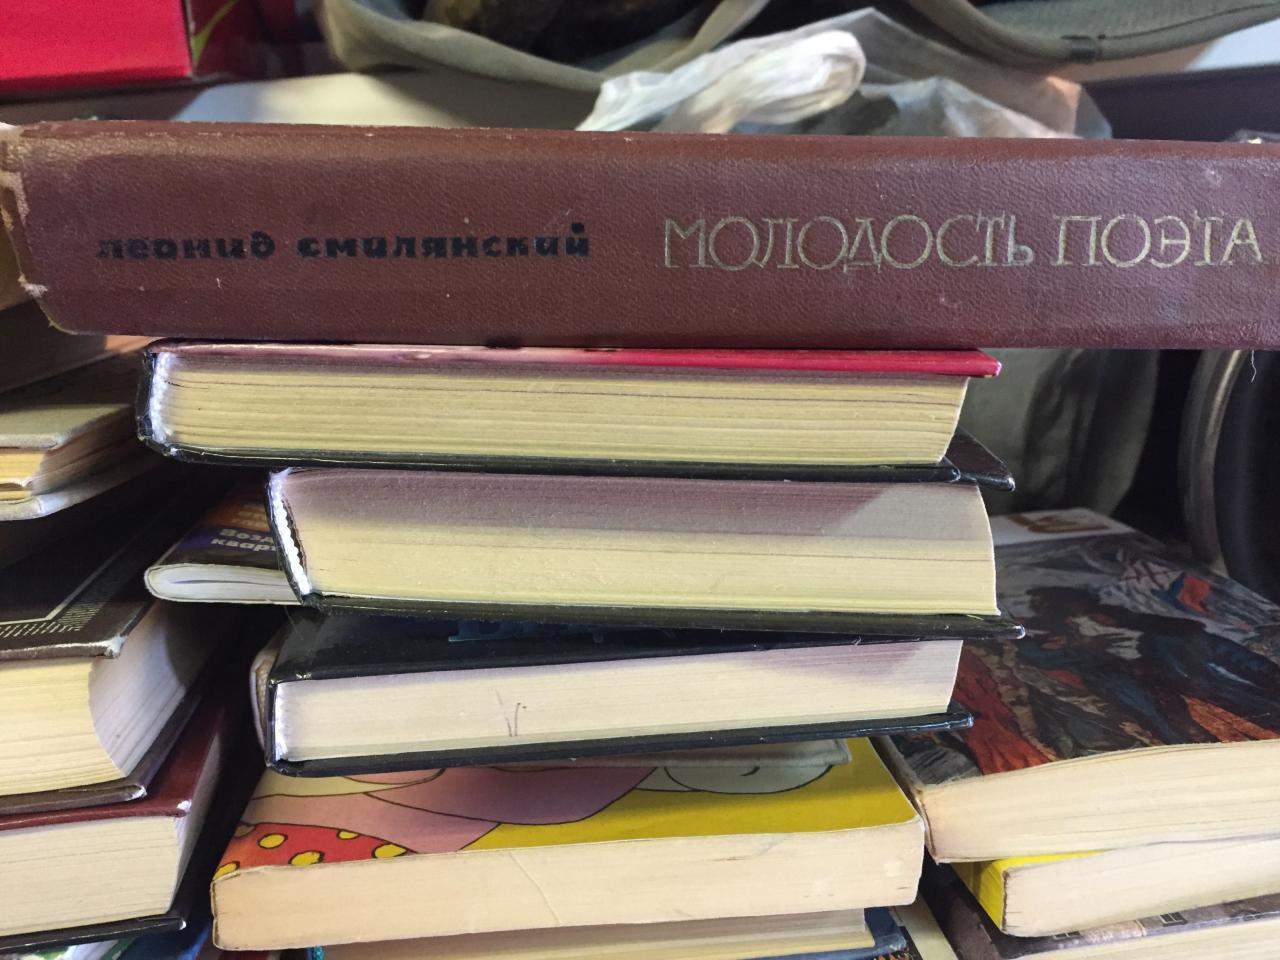 Где Можно Купить Советские Книги